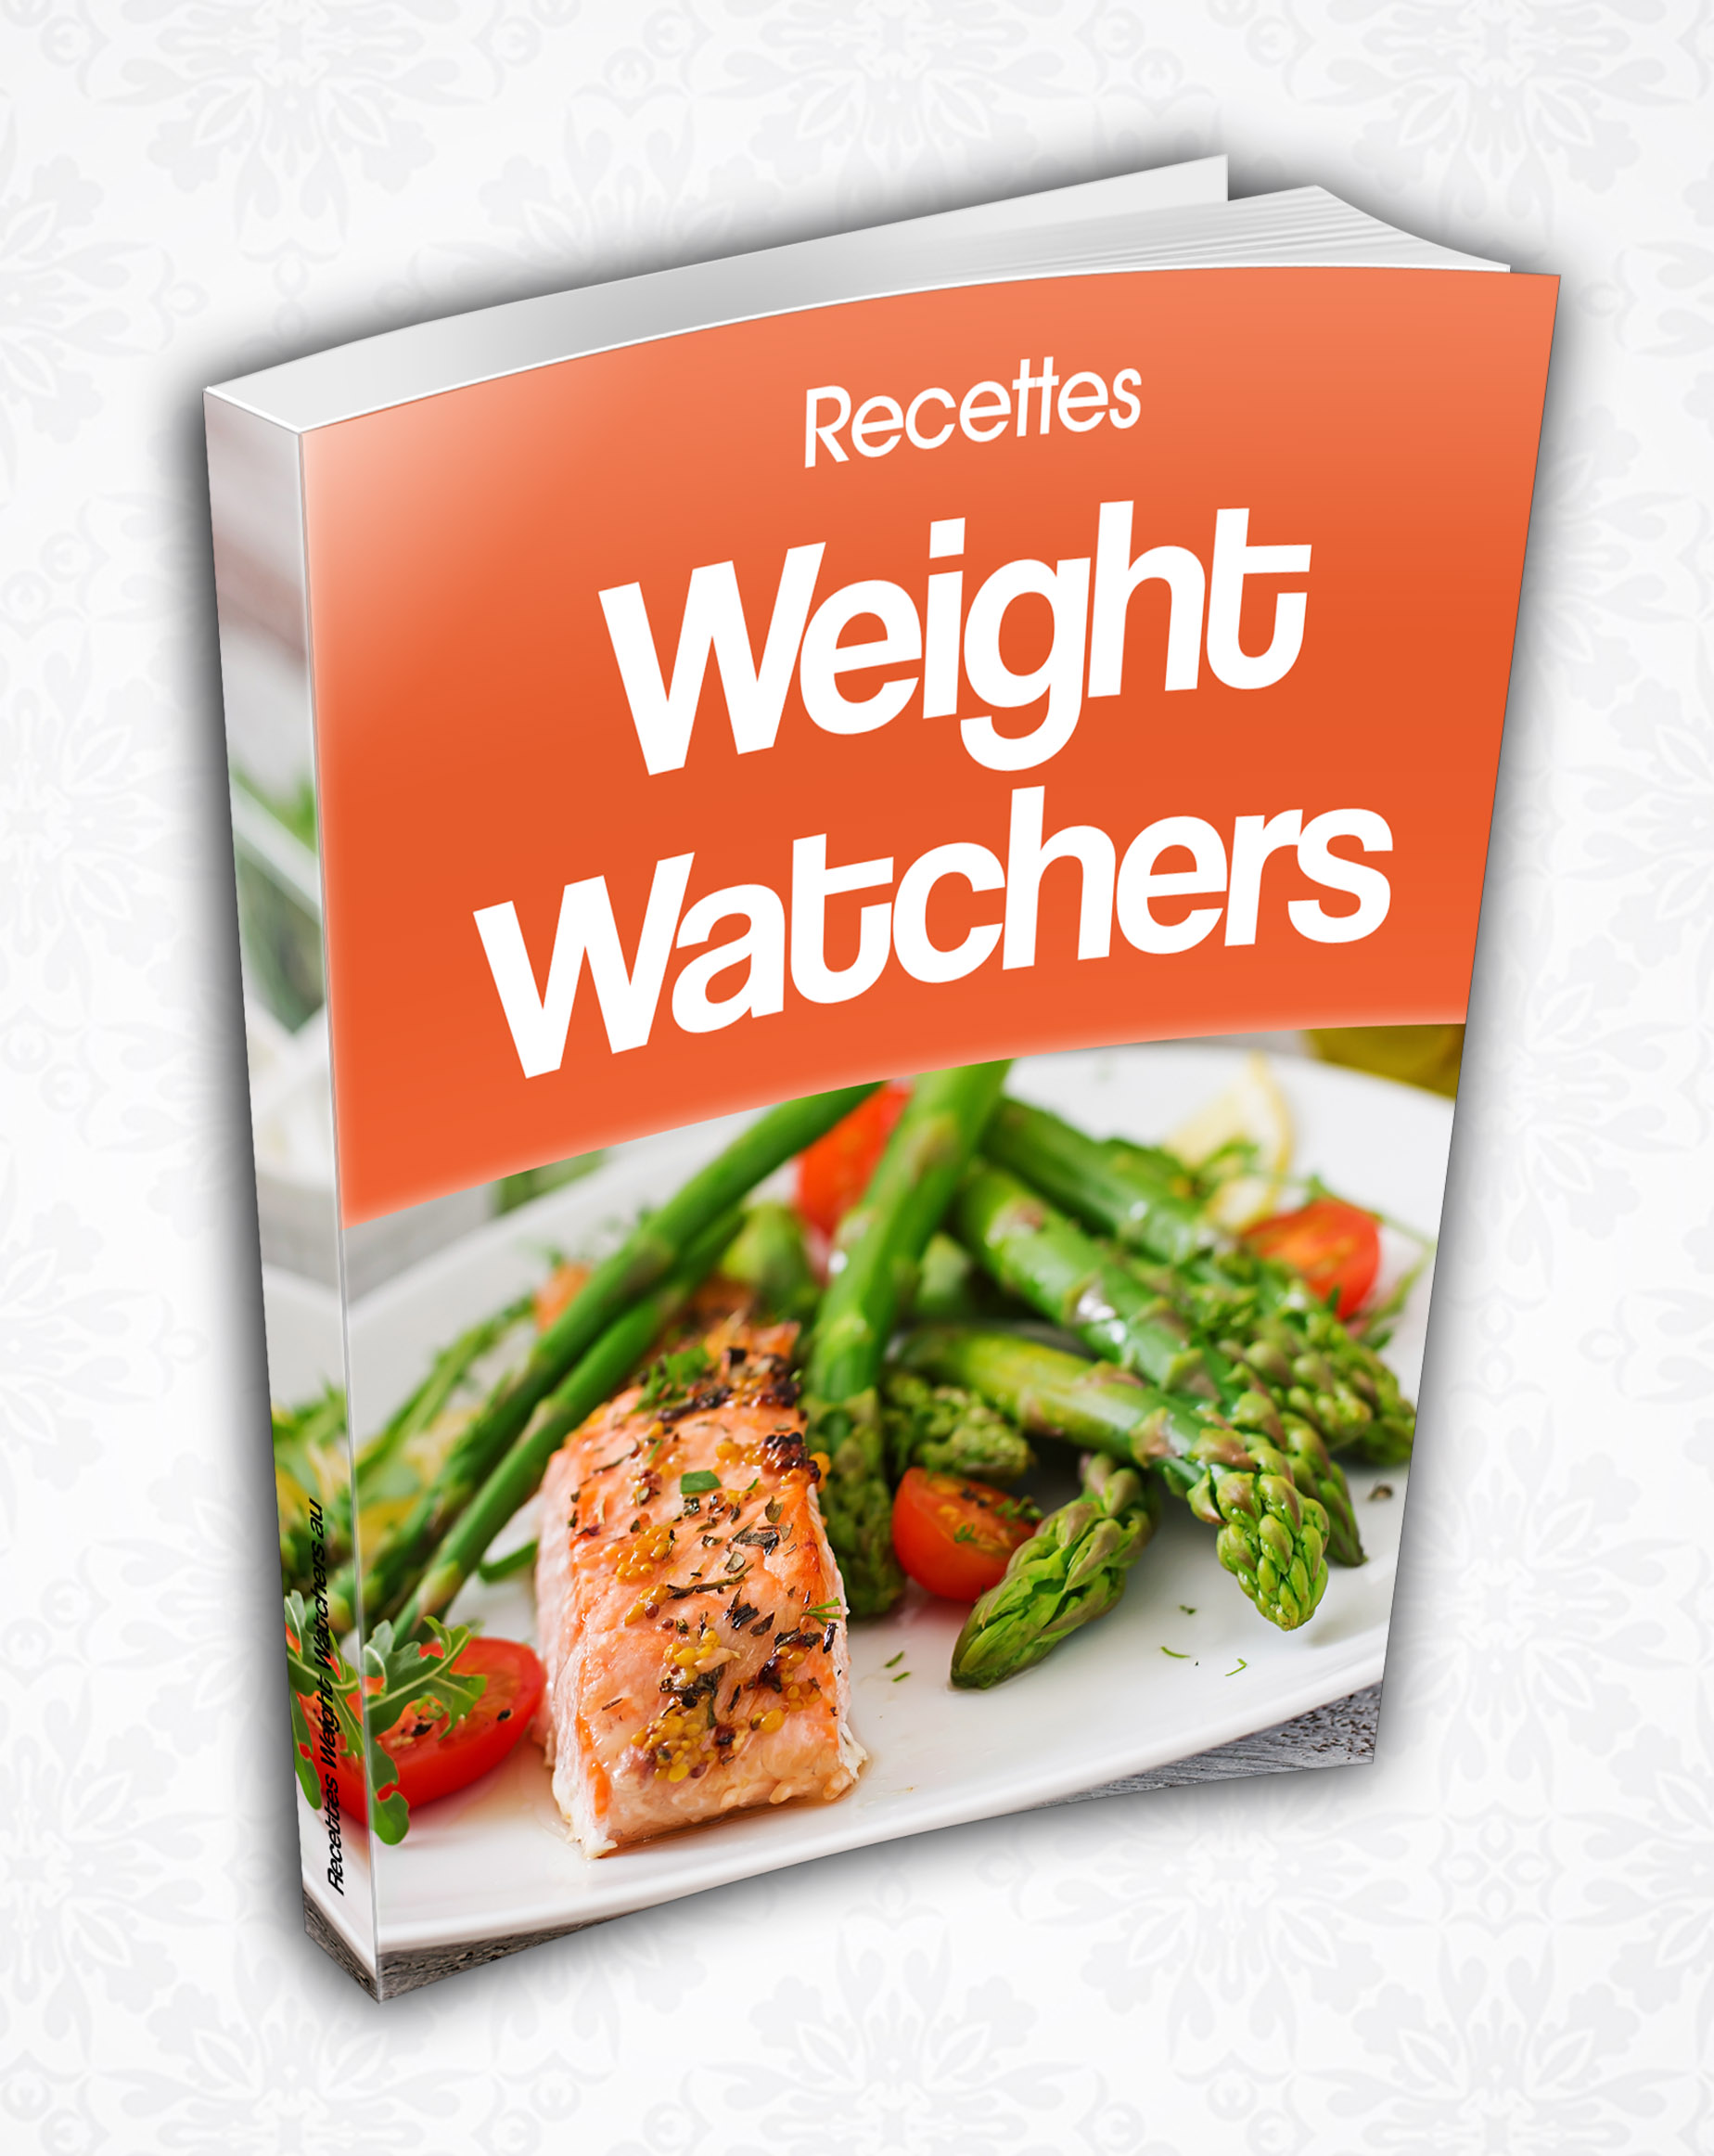 Healthy kitchen, des livres de recettes de Weight Watchers